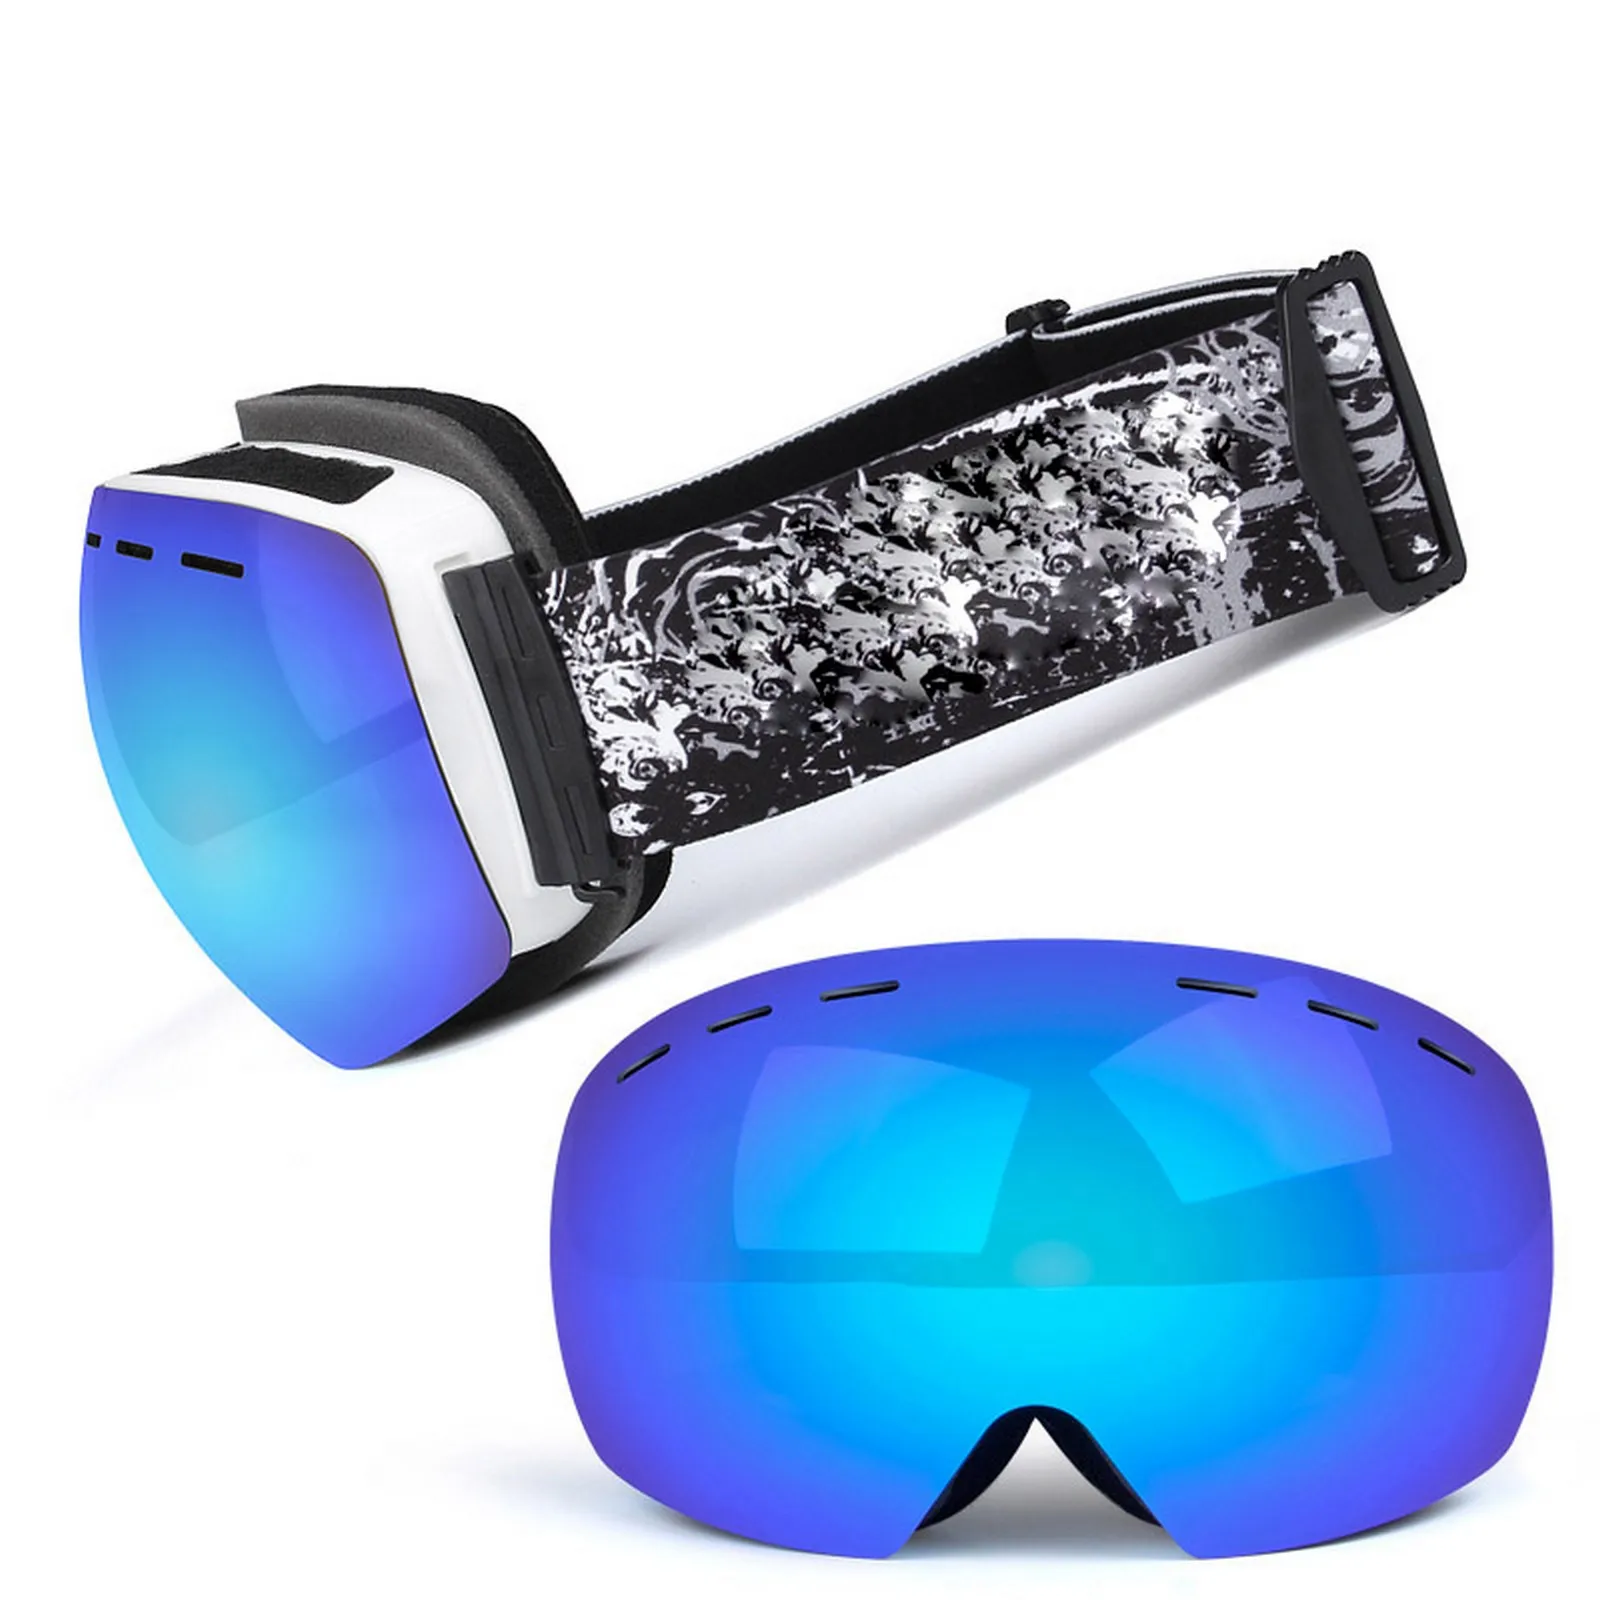 

Лыжные очки для улицы, защита от УФ лучей, двухслойные противотуманные сферические очки для мужчин и женщин, ветрозащитные очки для альпинизма, оборудование